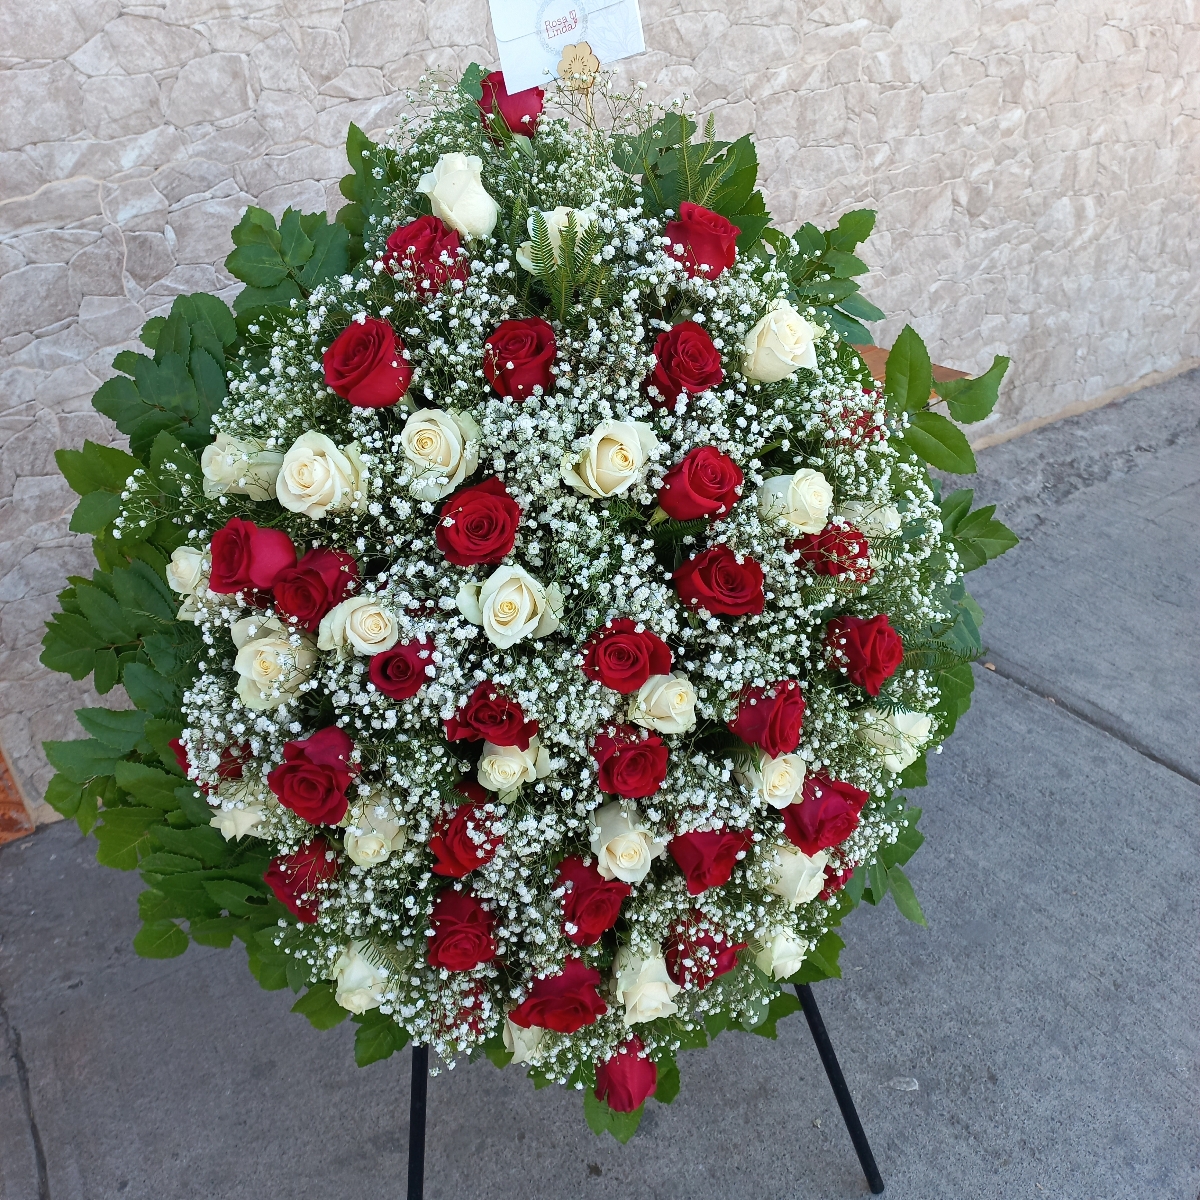 Por Siempre - Corona de condolencias con rosas blancas, rosas rojas y gypsophilas - Pedido 254434